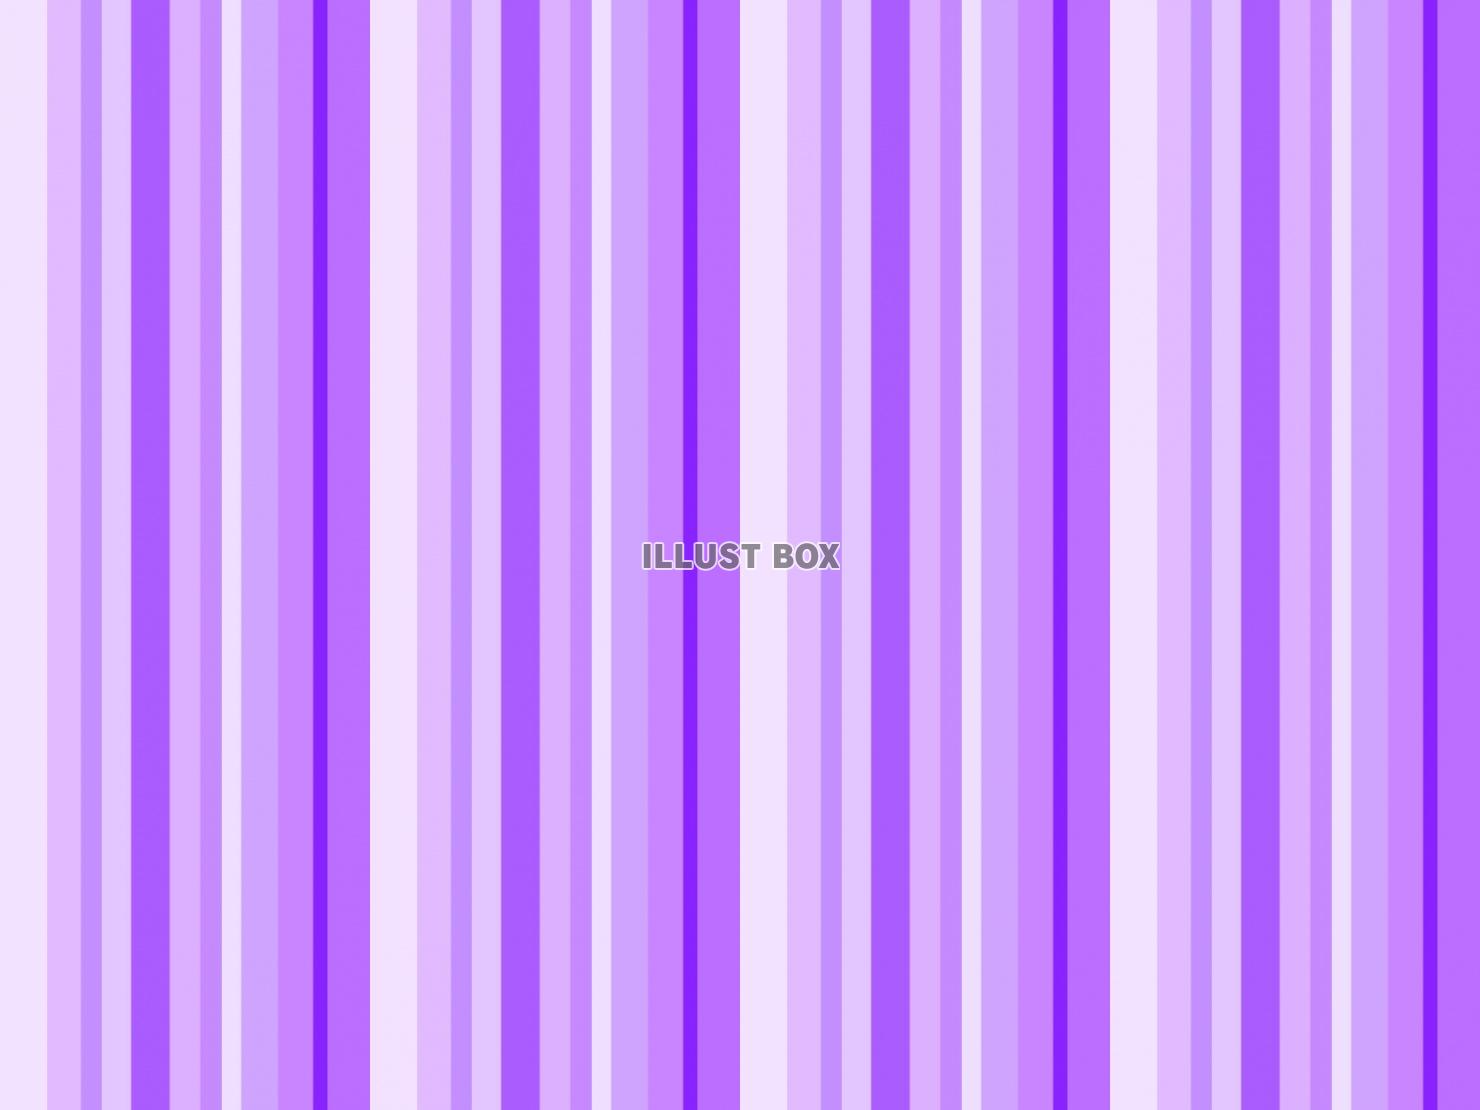 ランダムストライプ 紫